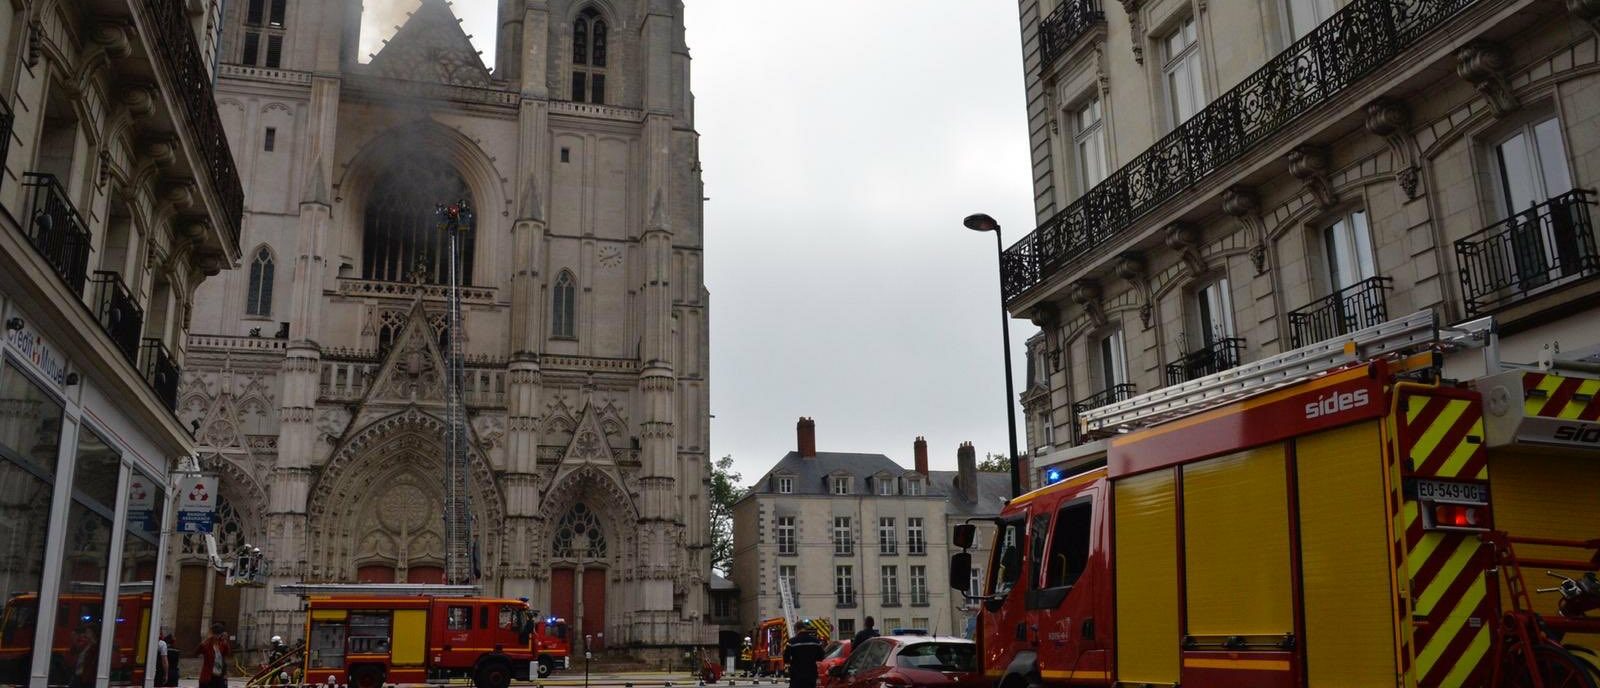 Les sapeurs pompiers ont pu circonscrire le feu dans la cathédrale de Nantes (Twitter Johanna Rolland)